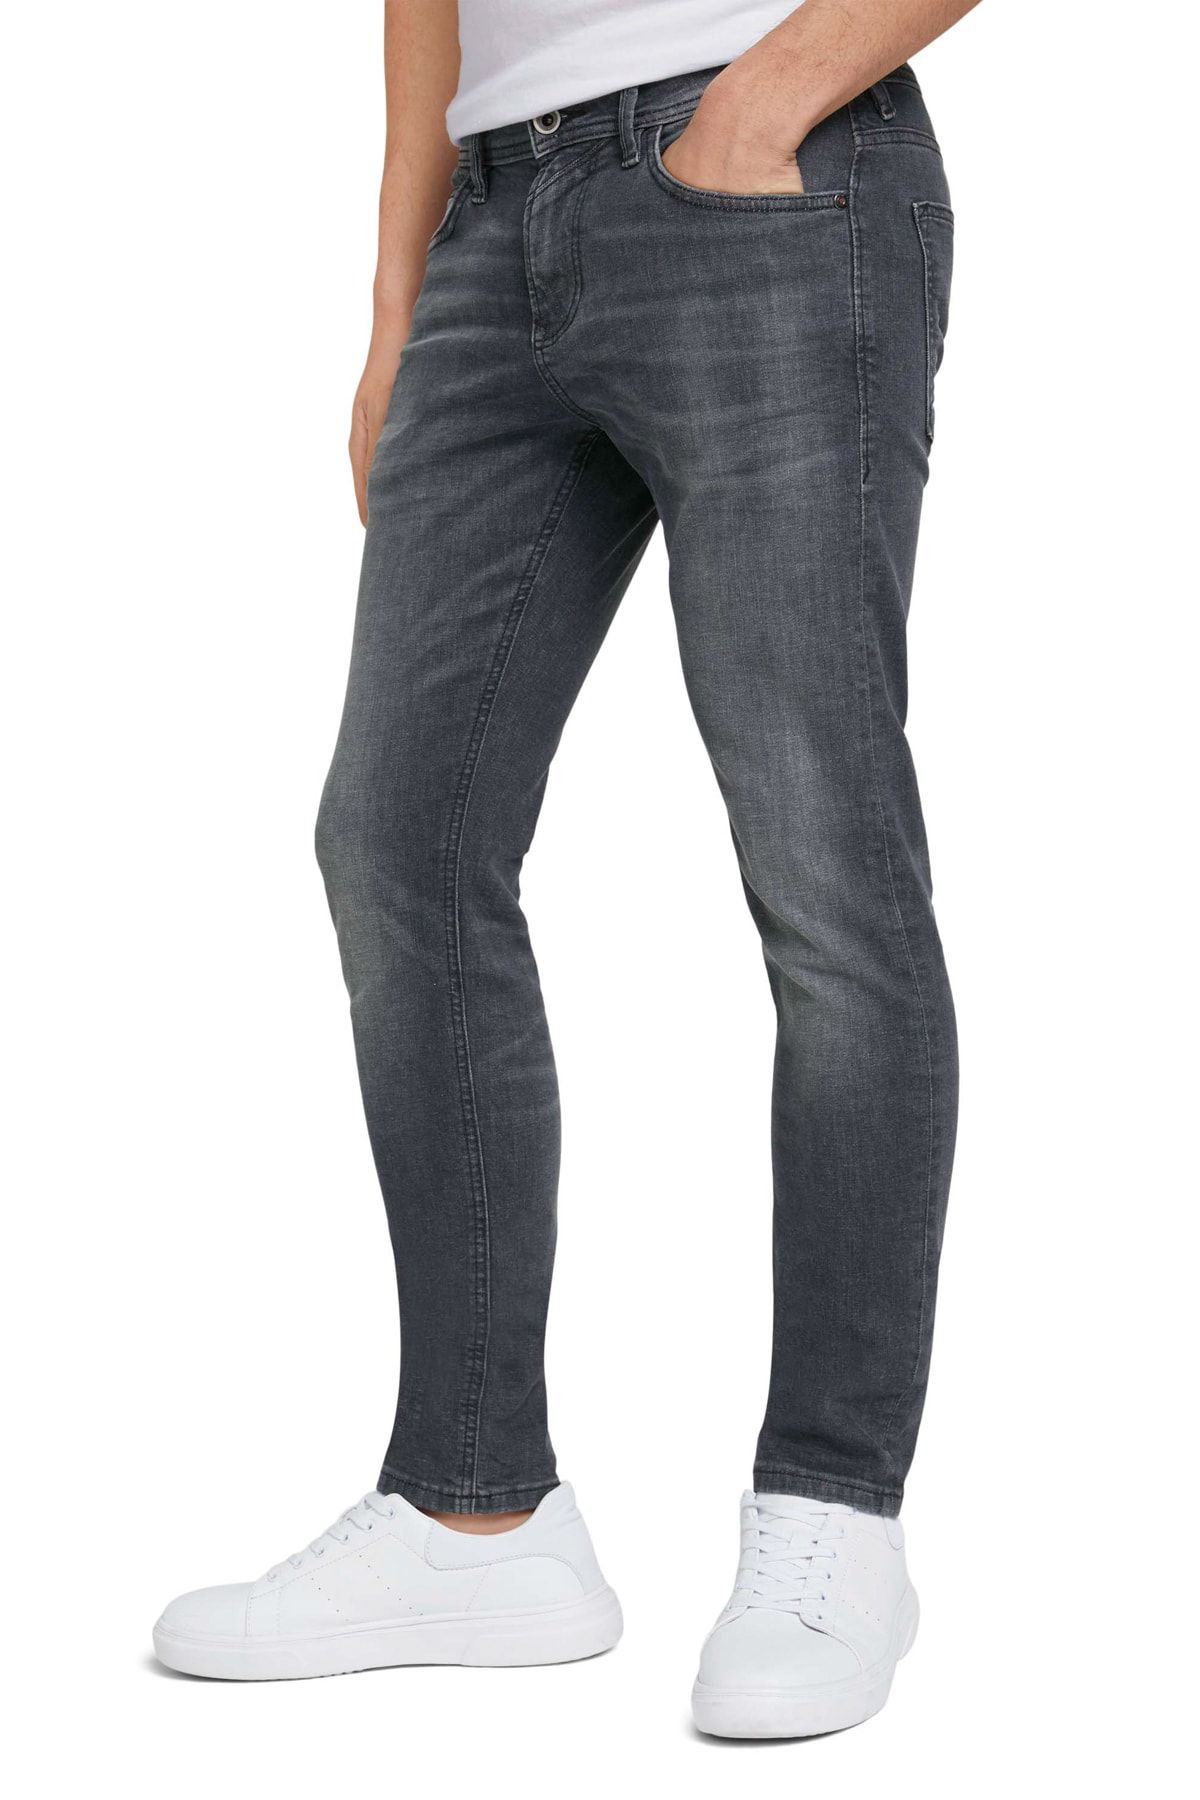 Tailor Denim Tom Trendyol - - Skinny - Gray Jeans